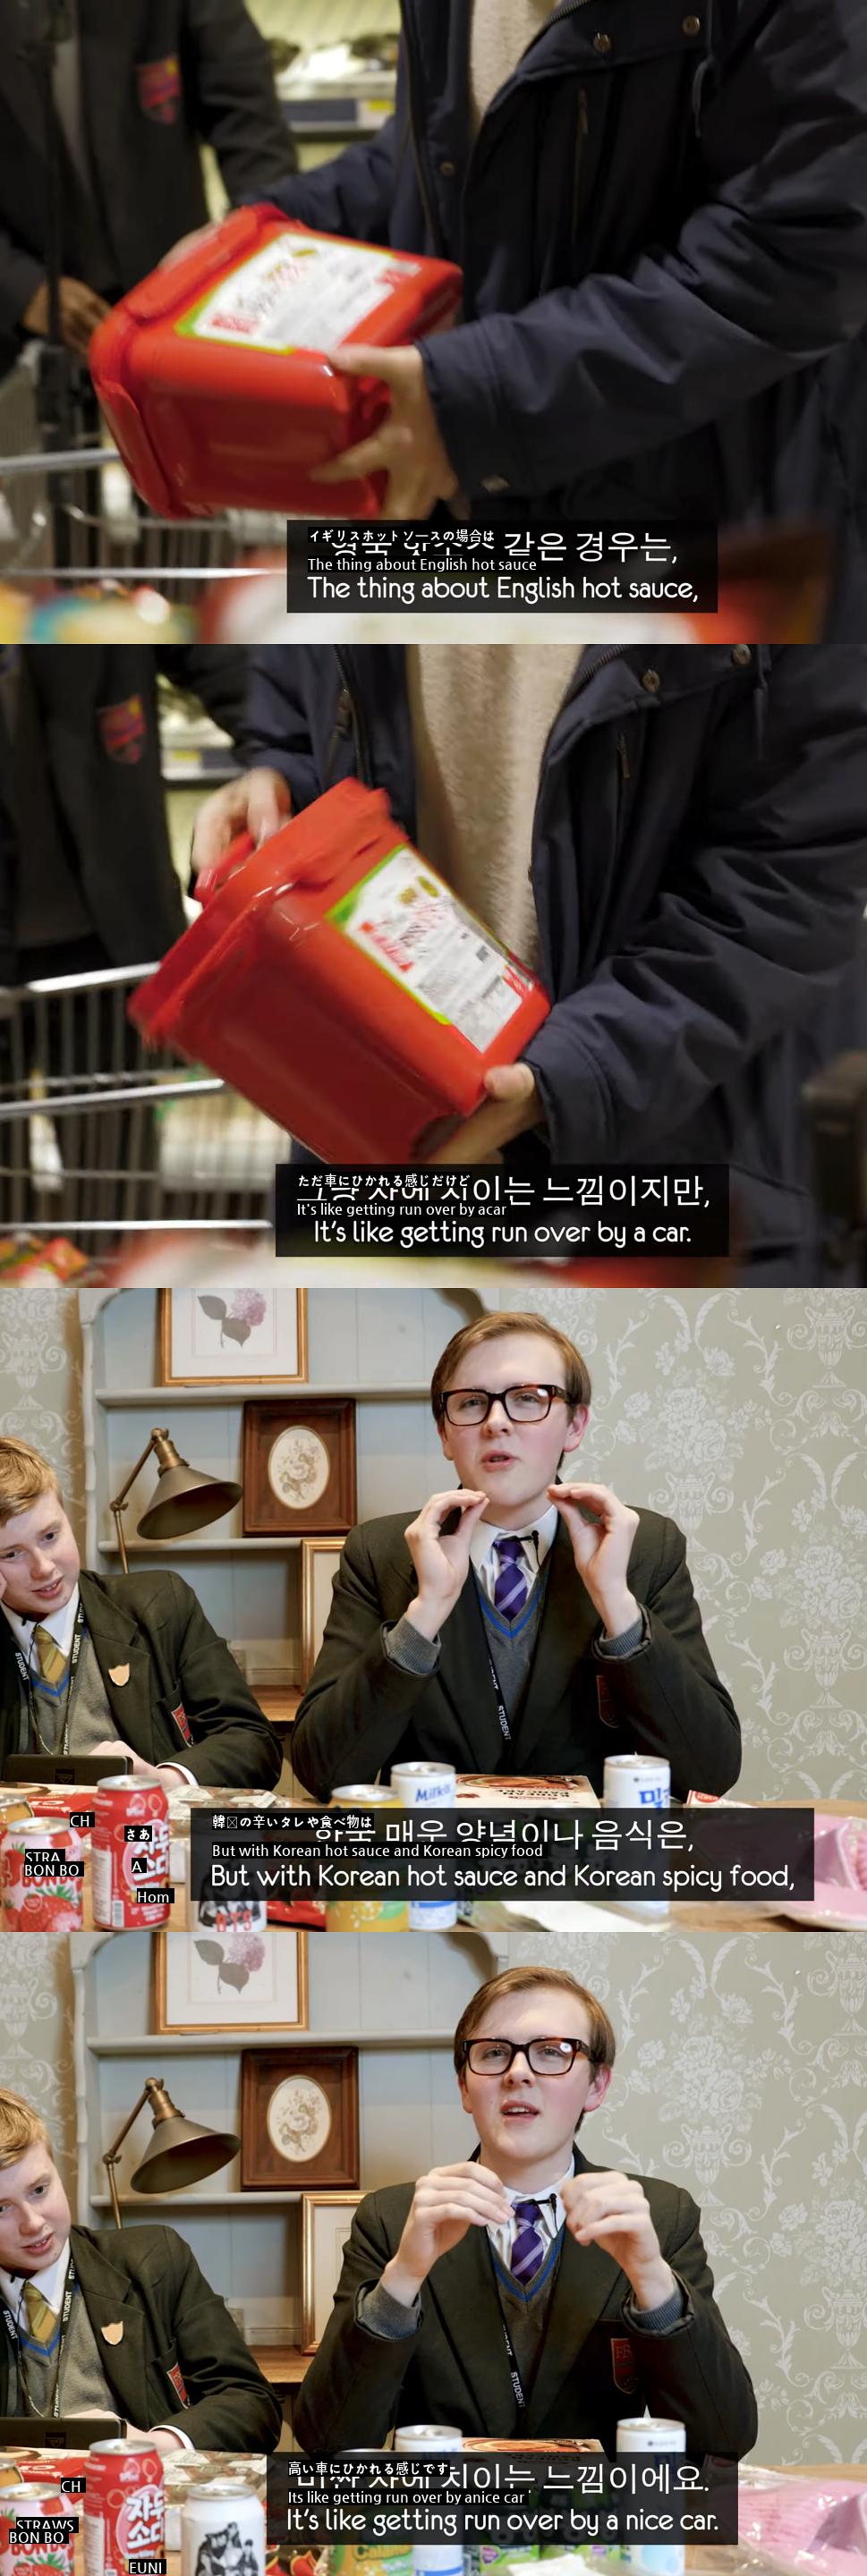 韓国の辛い味を見たイギリス高校生の描写